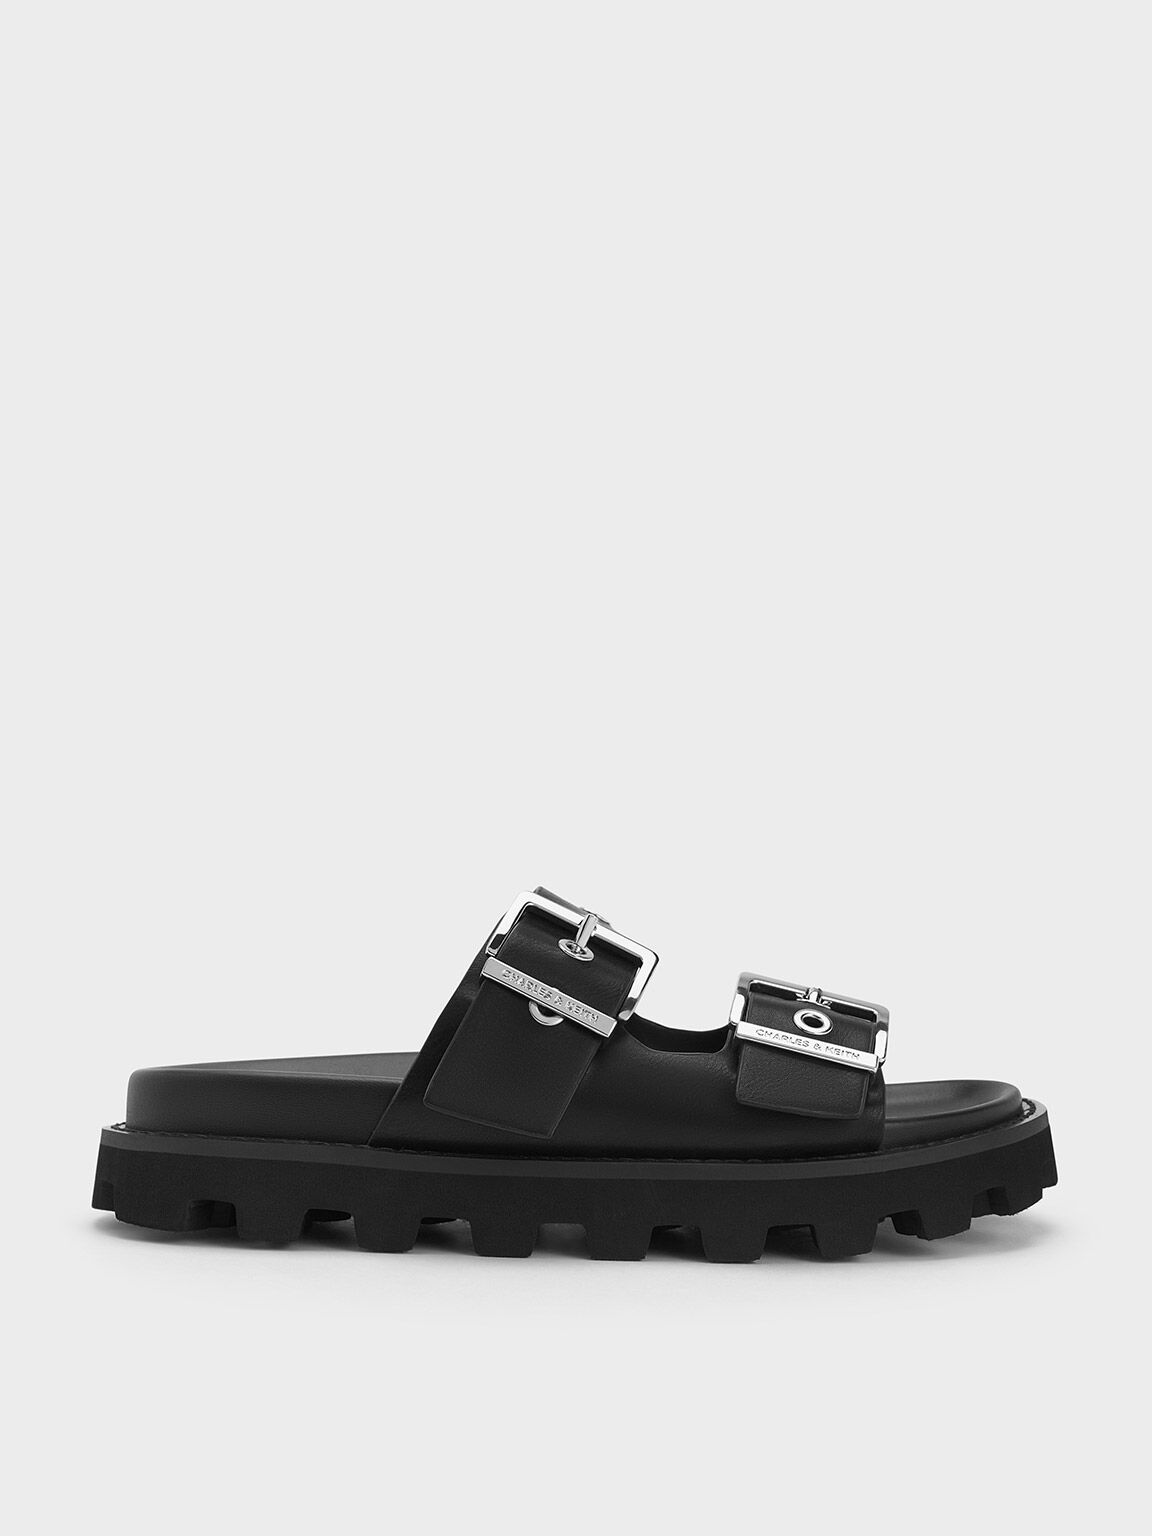 MAYVEN Black Leather Flatform Slide Sandal